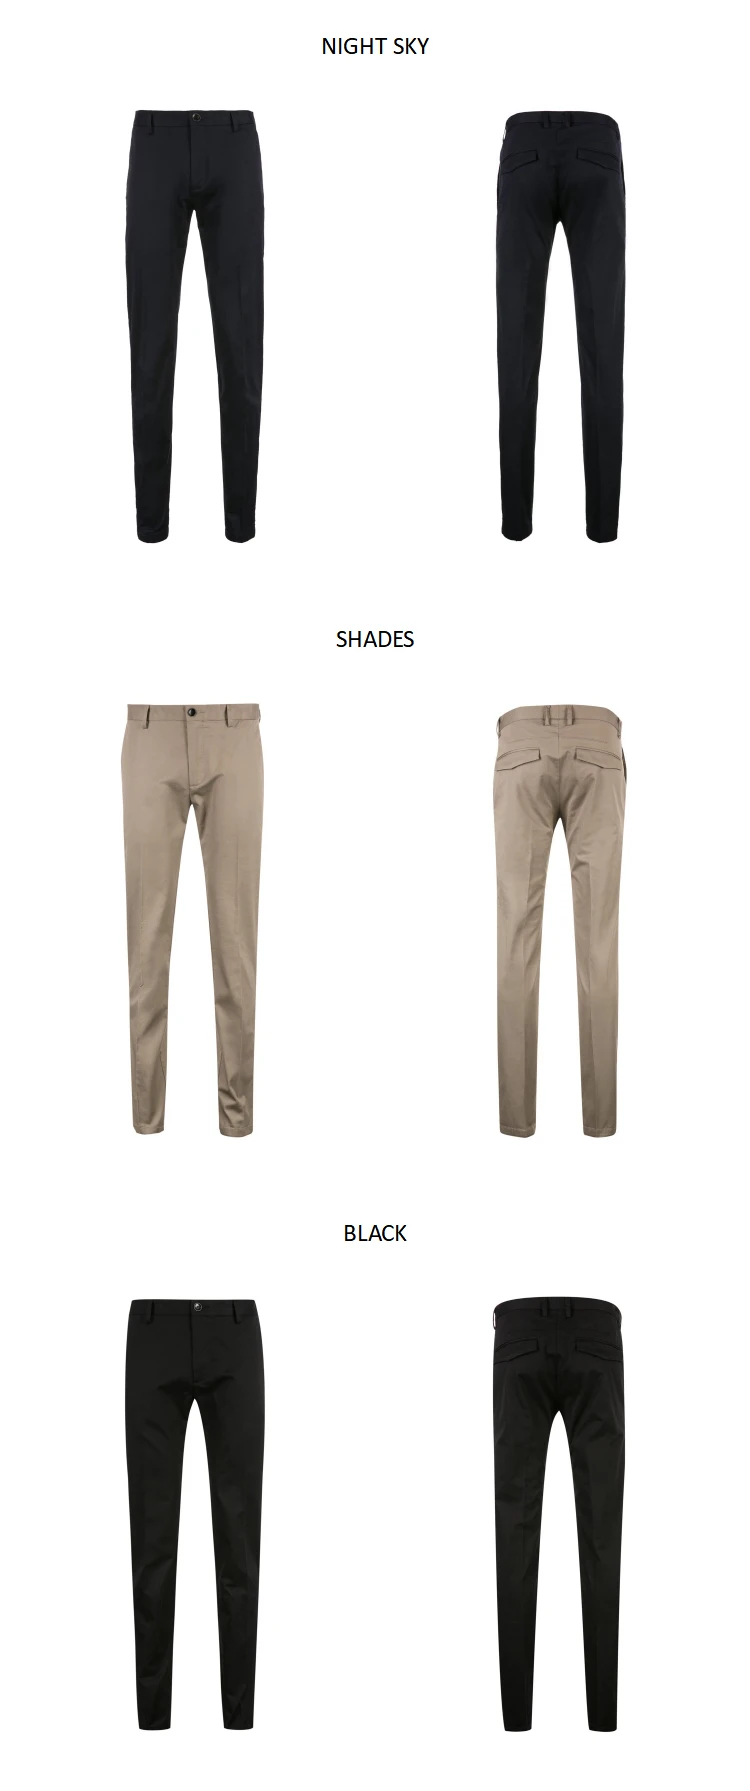 JackJones мужские хлопковые брюки эластичная ткань комфорт дышащий бизнес Смарт повседневные брюки Slim Fit Брюки Мужская одежда | 218314502